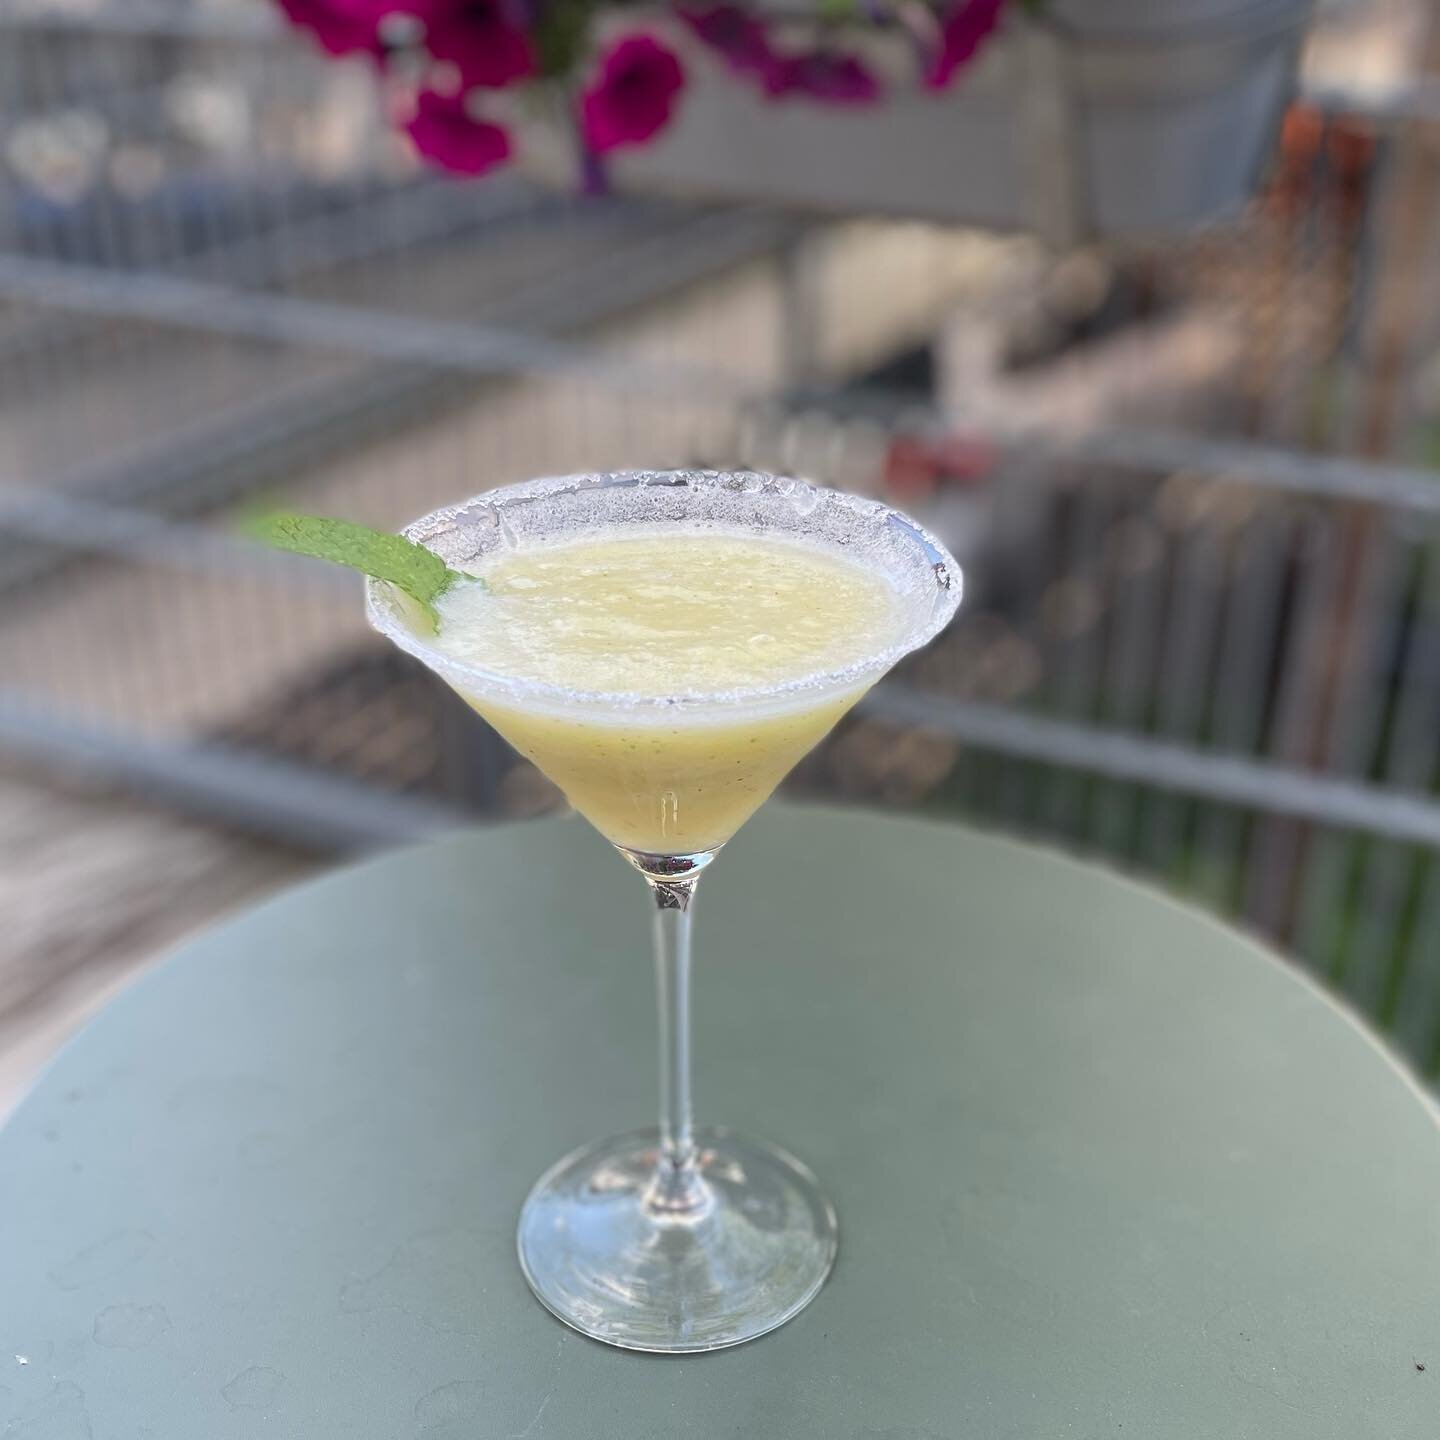 Nectarine daiquiri #cocktailtime #summer